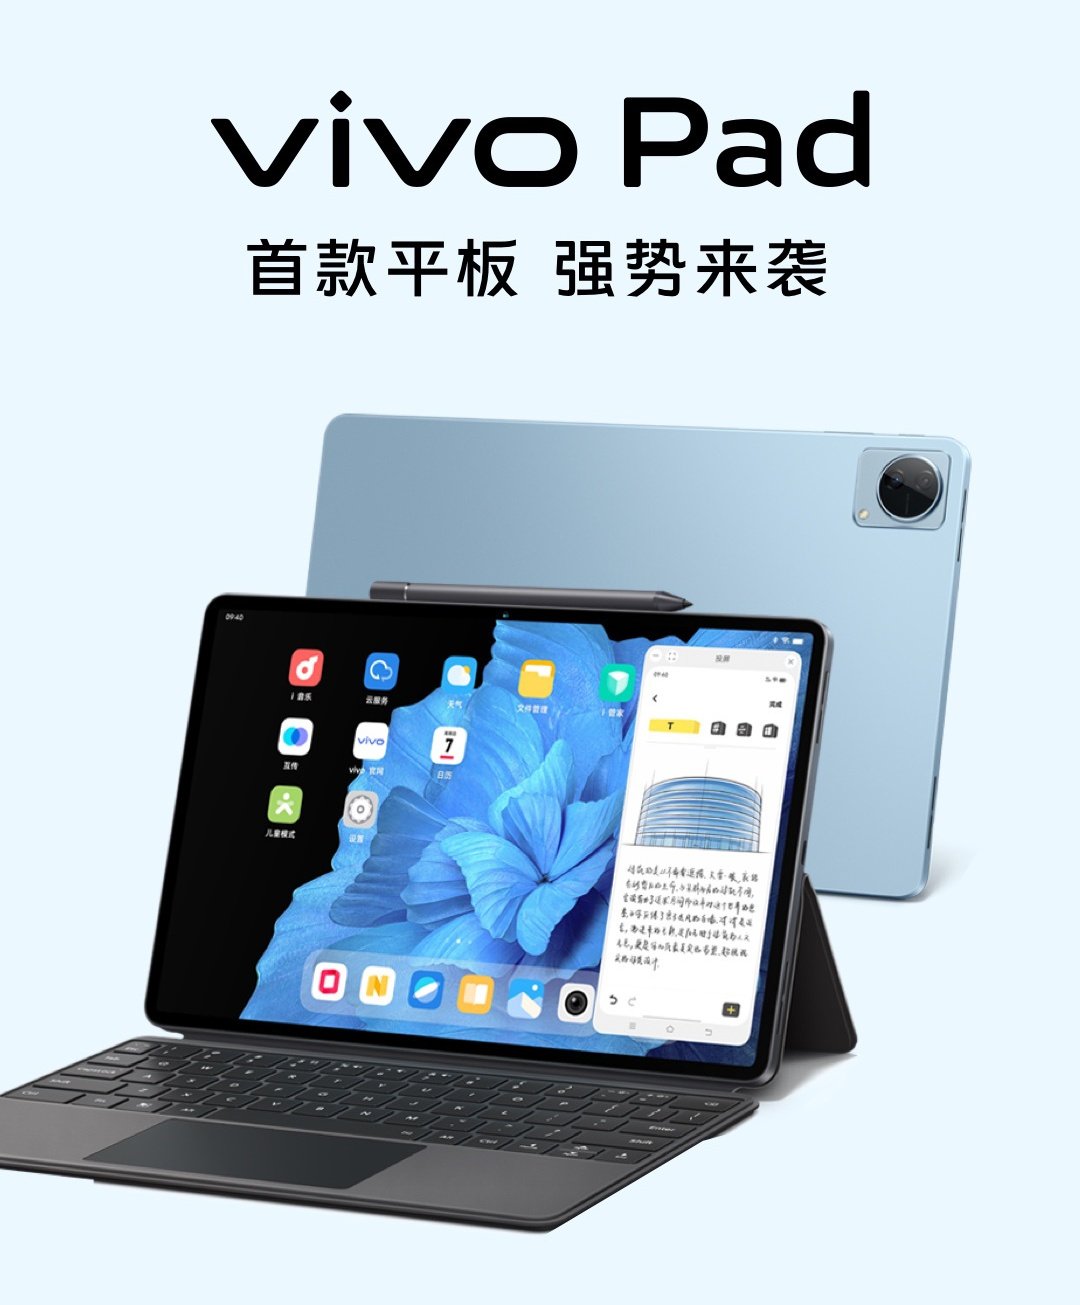 İşte özellikleri ile dikkat çeken Vivo Pad fotoğrafları